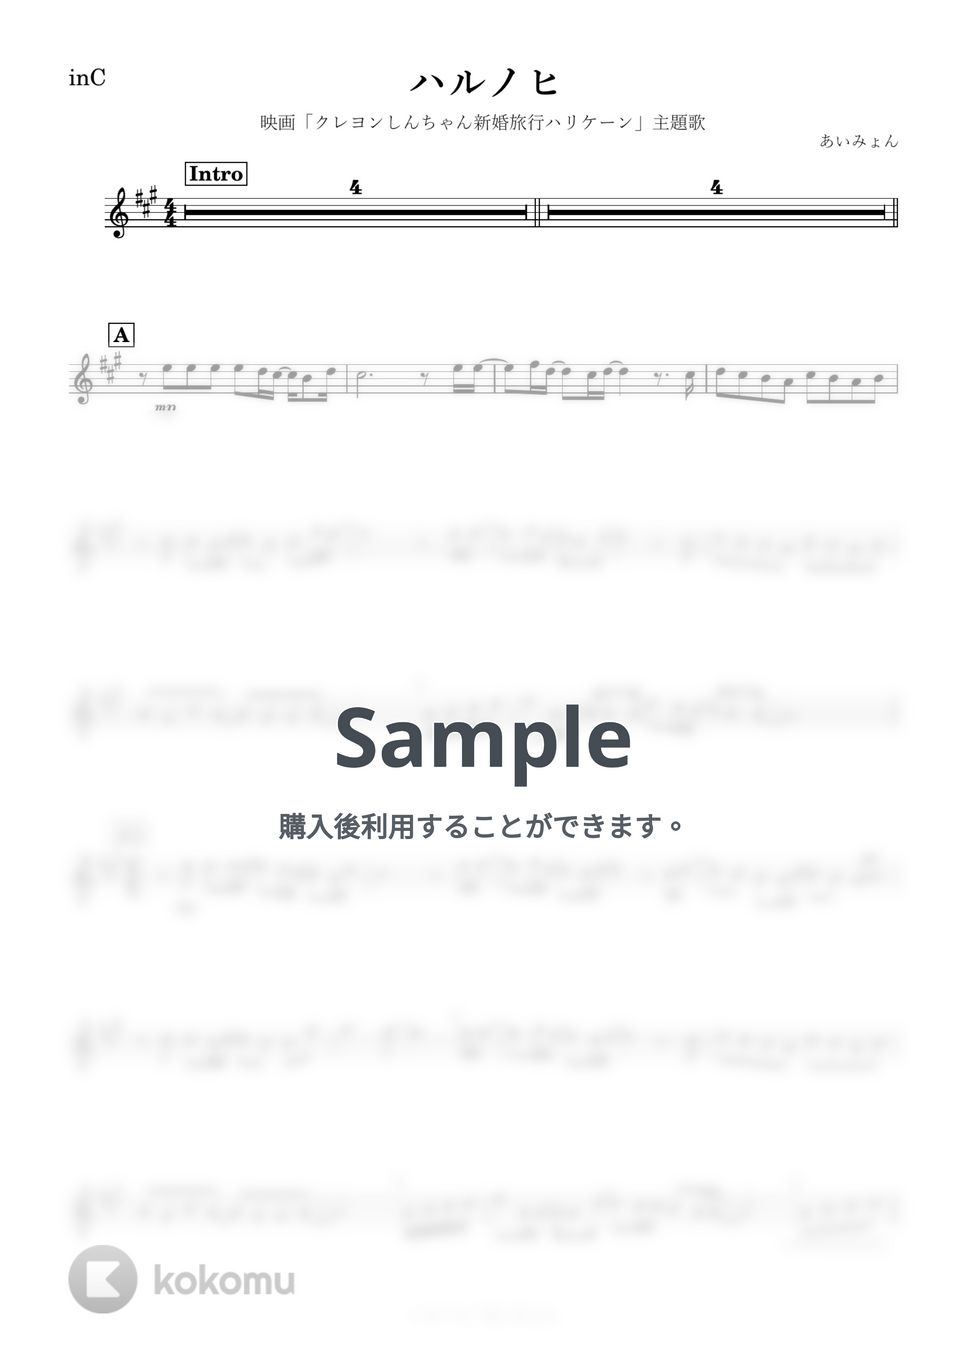 あいみょん - ハルノヒ (C) by kanamusic